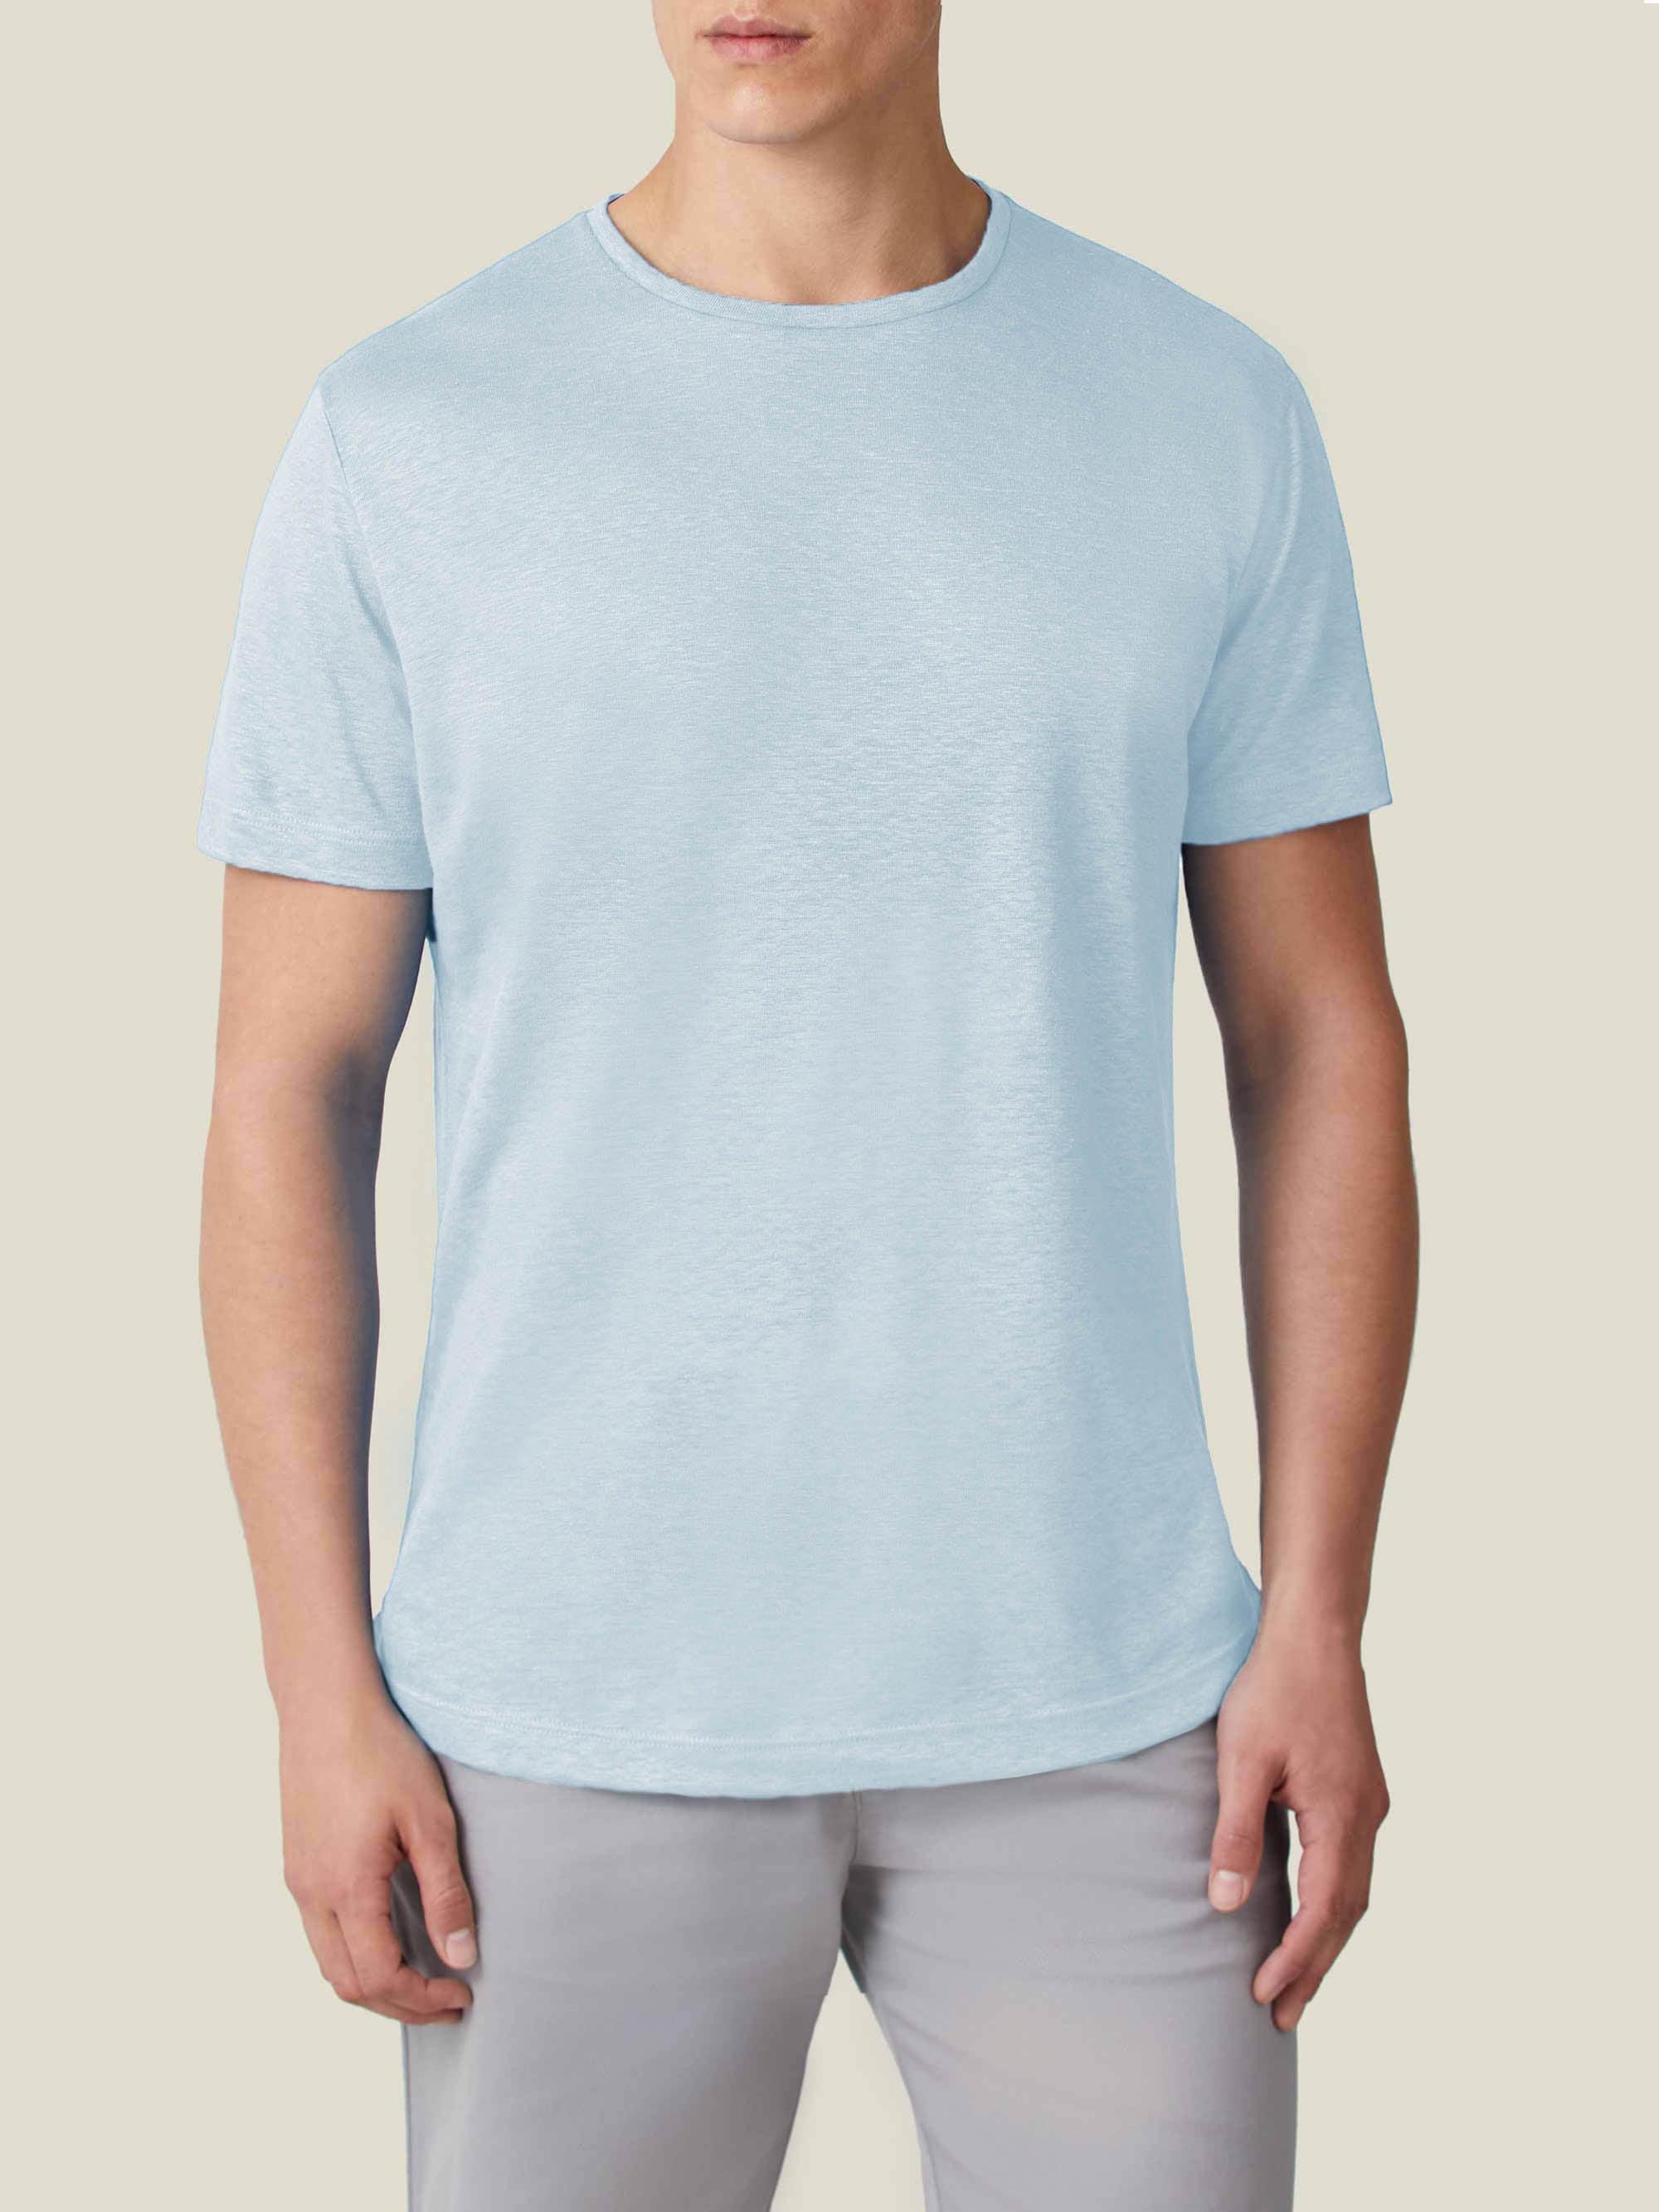 Light Blue Linen Jersey T-Shirt product